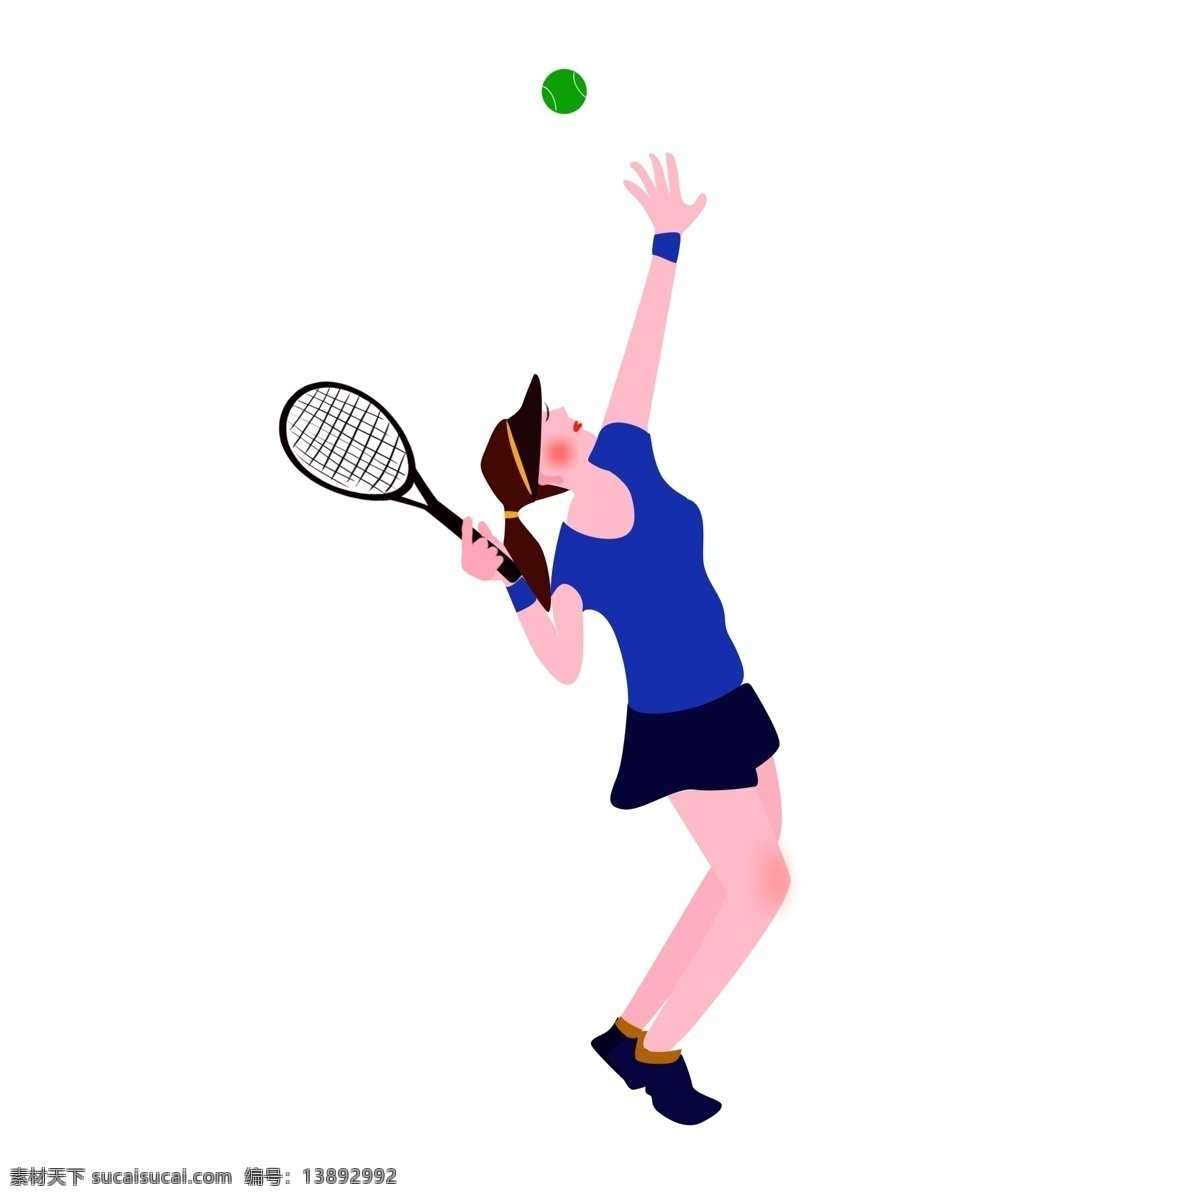 原创 网球 运动 比赛 人物 元素 运动人物 蓝色 网球拍 手绘